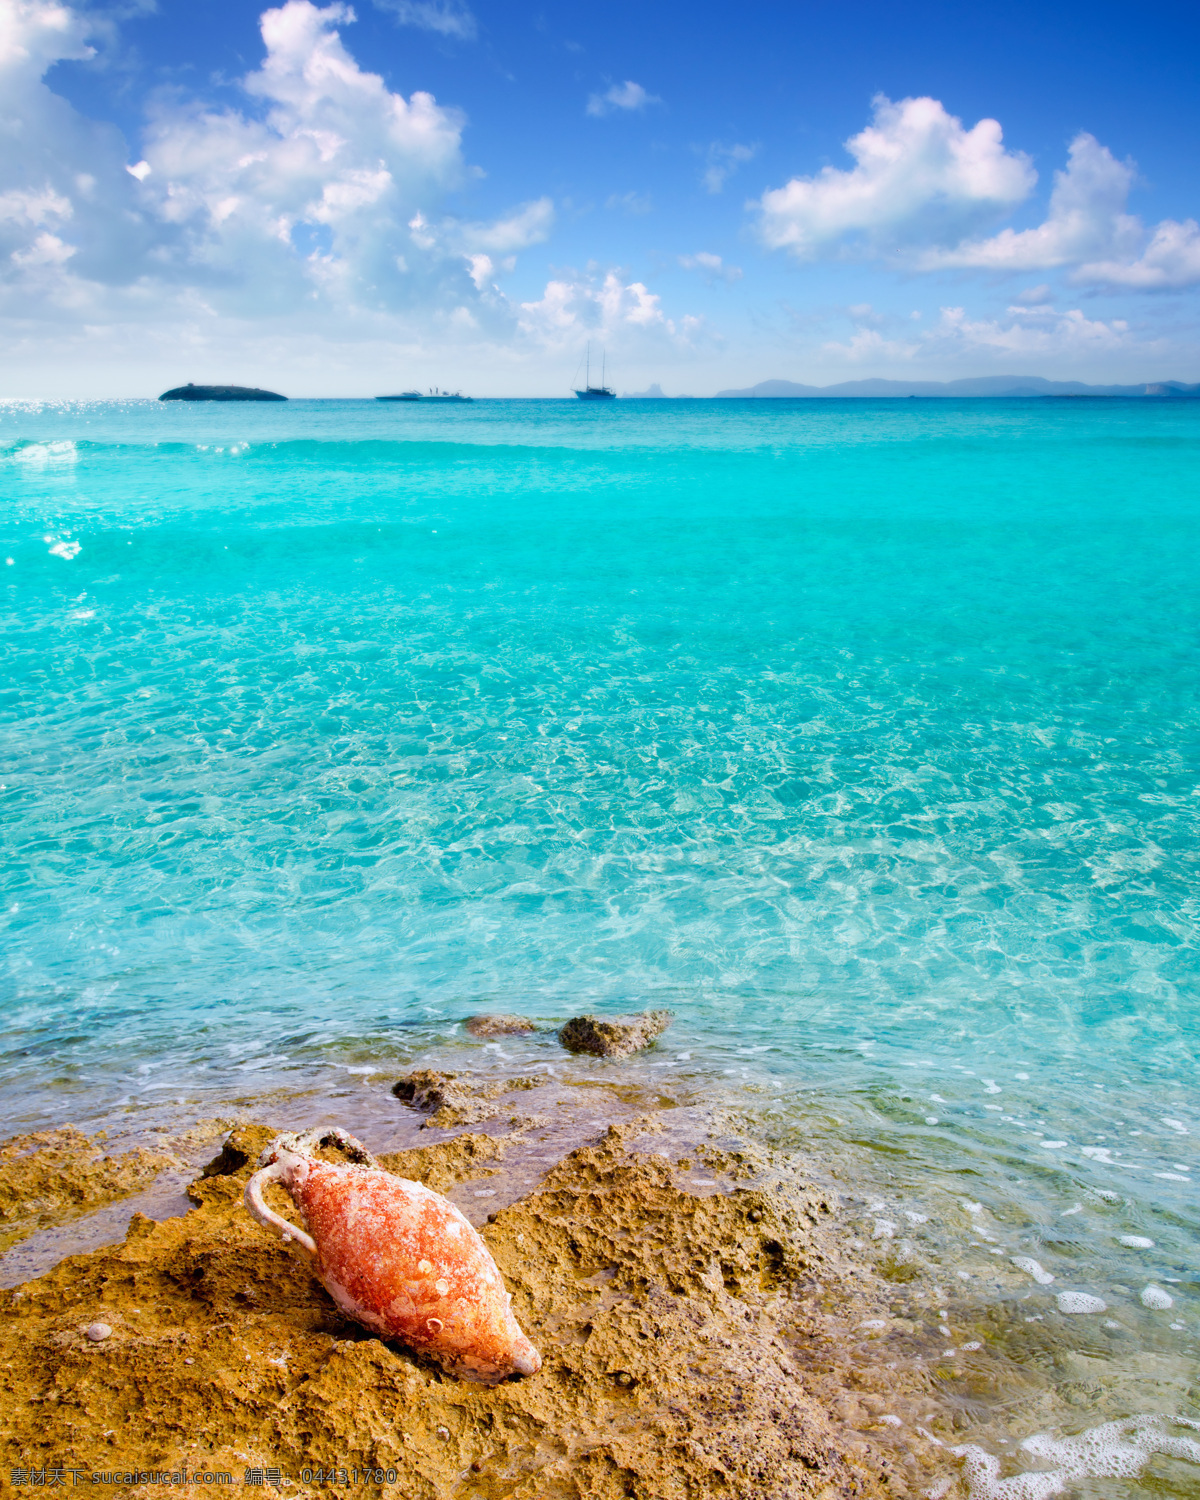 美丽海滩风景 海洋风景 大海 海平面 海面 海水 海螺 海滩 沙滩 美丽风景 海景 摄影图 海洋海边 自然景观 青色 天蓝色